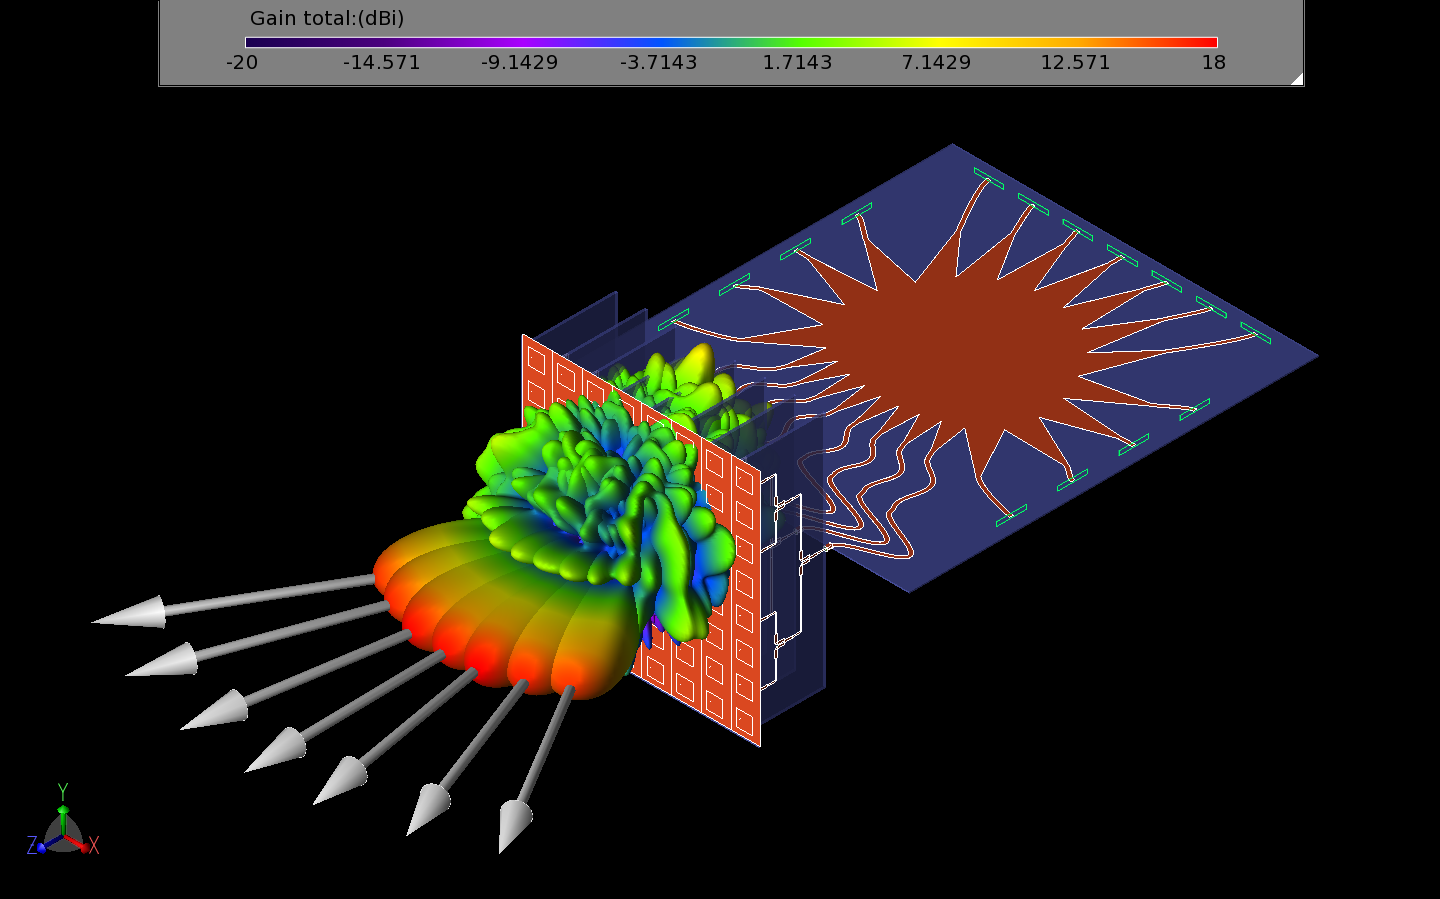 Abbildung 23: Diese Abbildung zeigt alle sieben Strahlen des gesamten Systems als dreidimensionale Verstärkungsmuster.